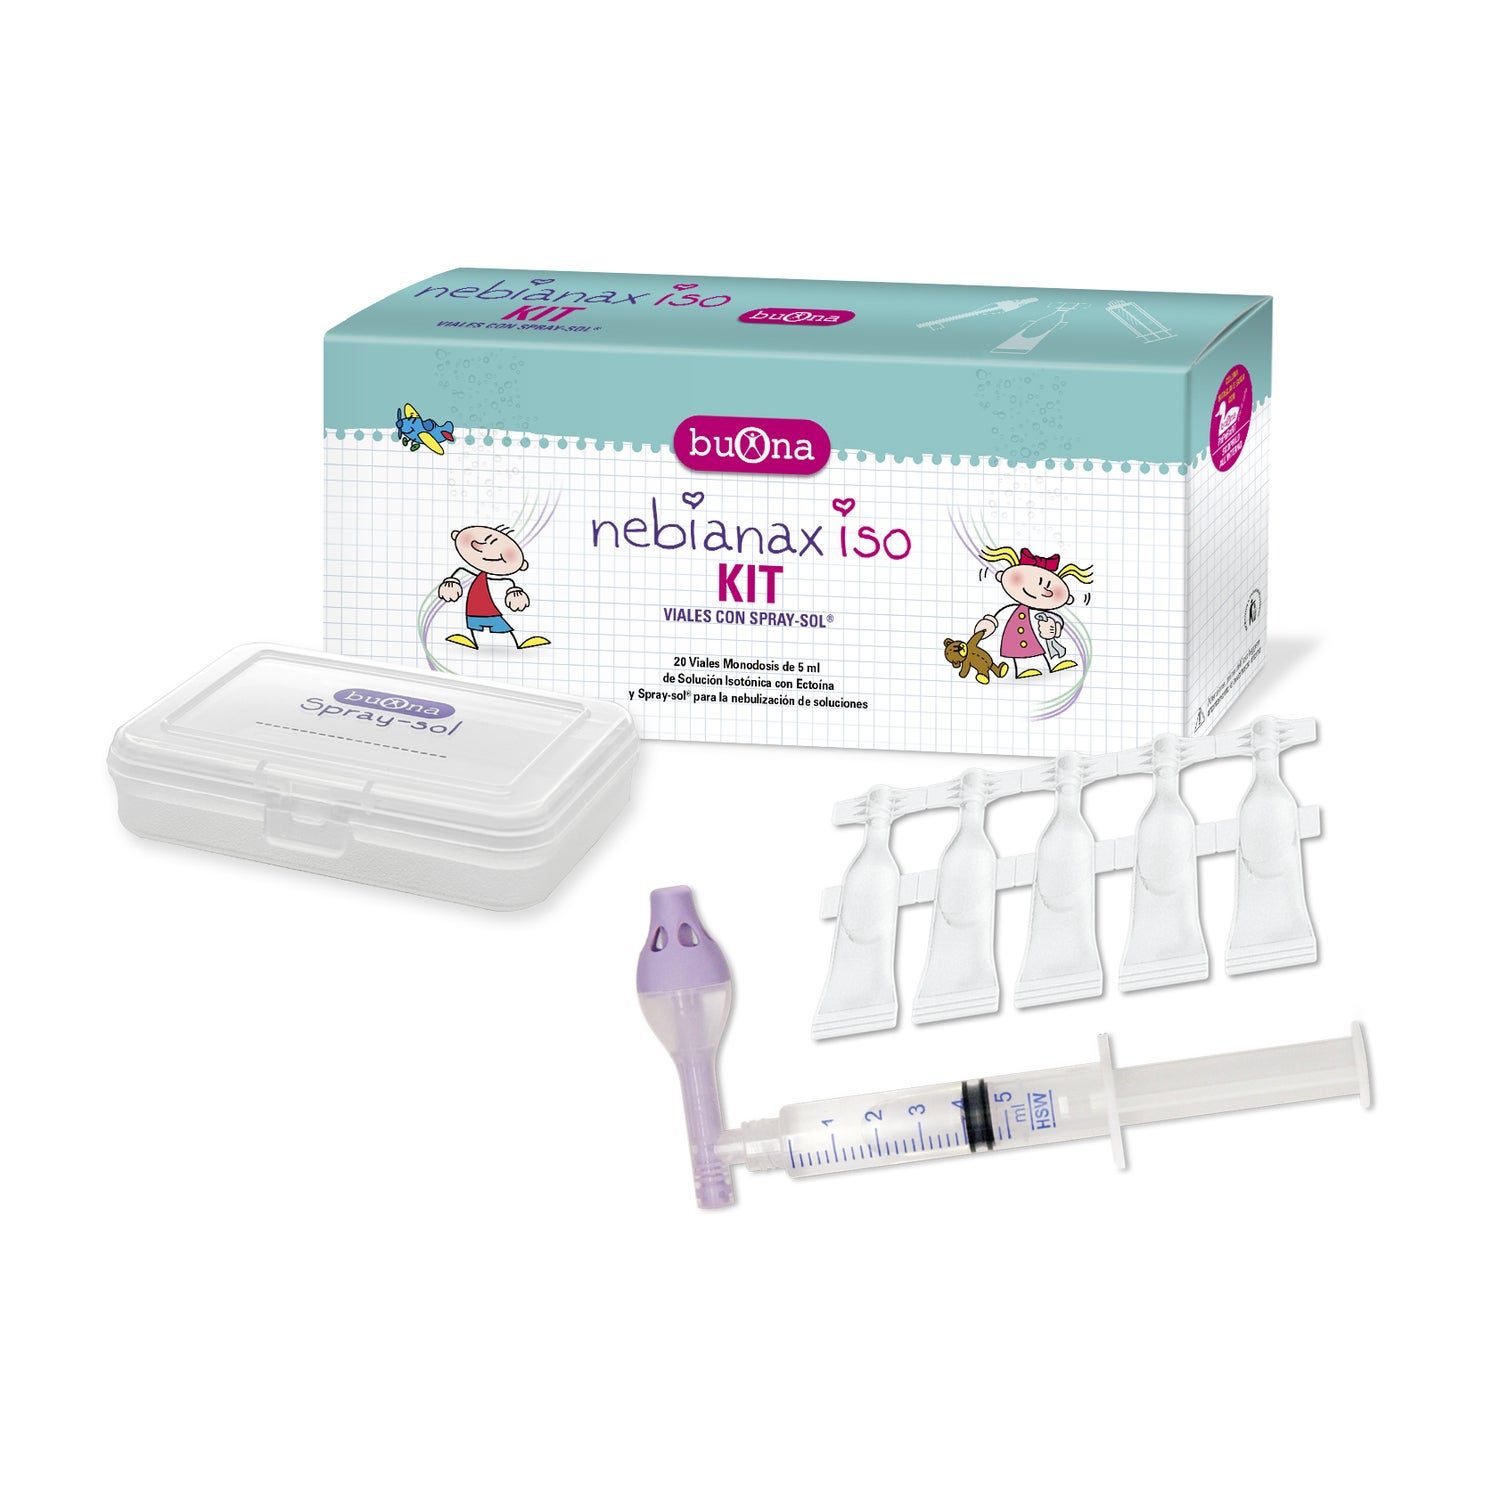 Aluneb - Dispositivo nebulización nasal